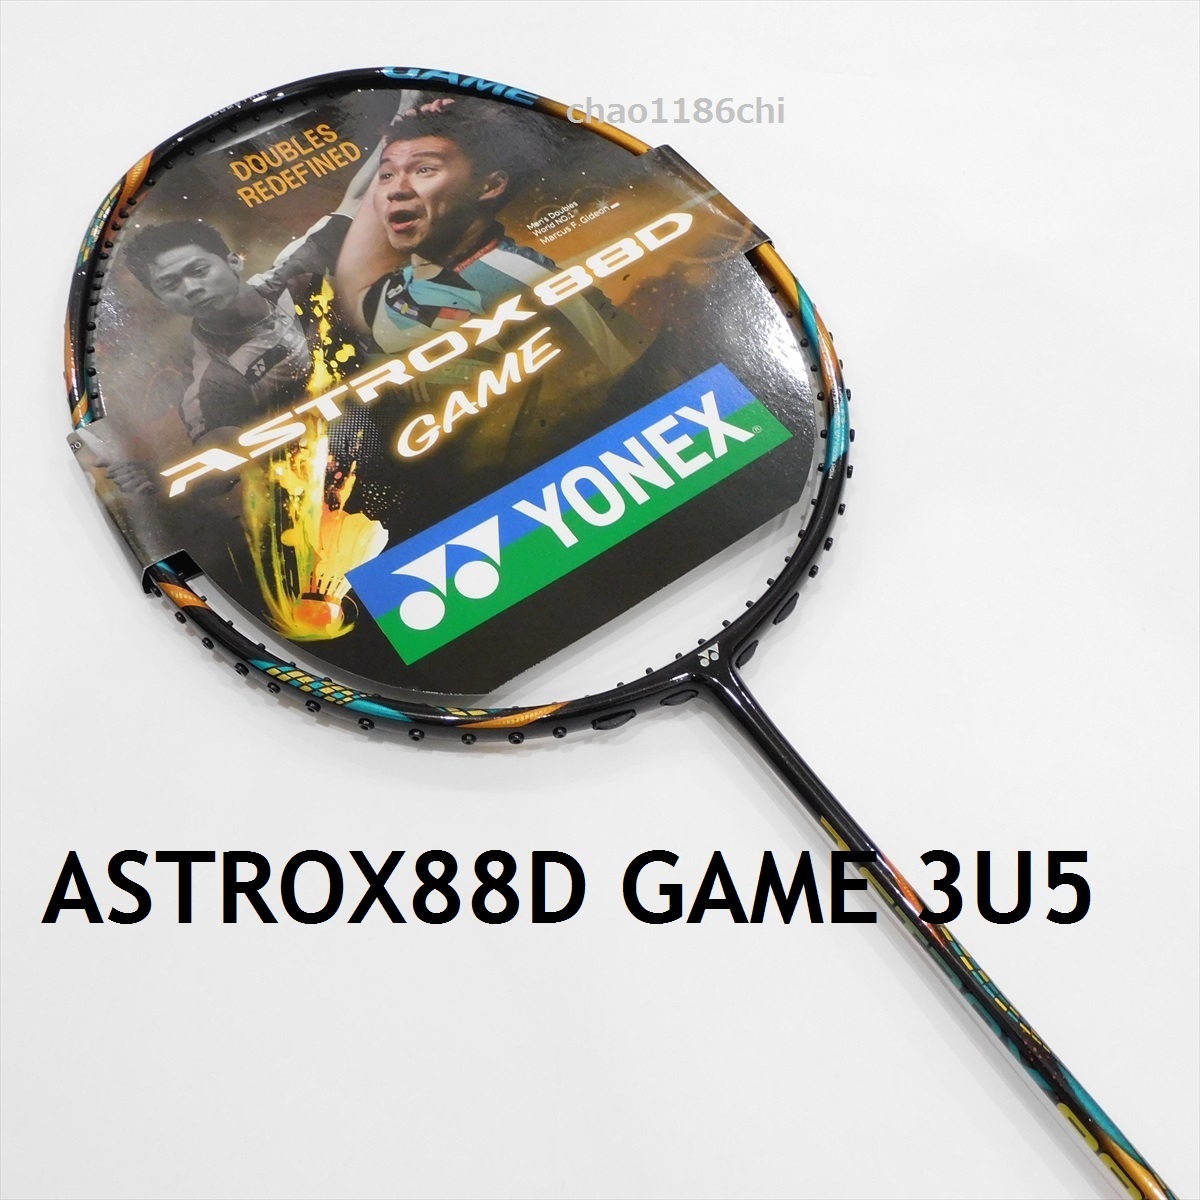 アストロクス88D PRO 3UG5-